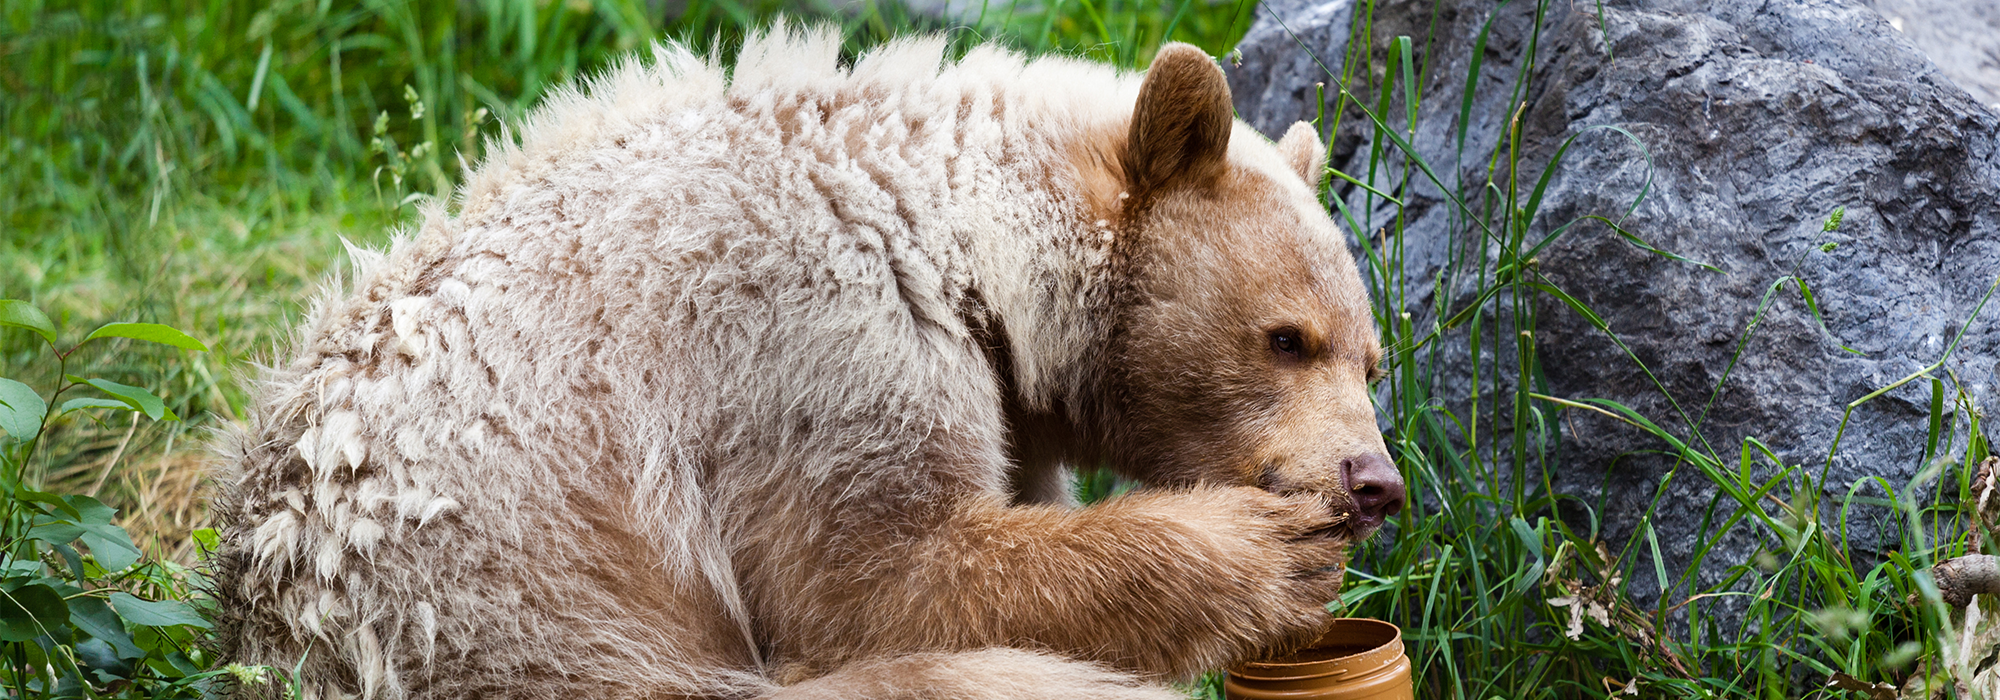 Медведь правила игры. Медведь с медом на природе. Медведь ест мед. Медведь.